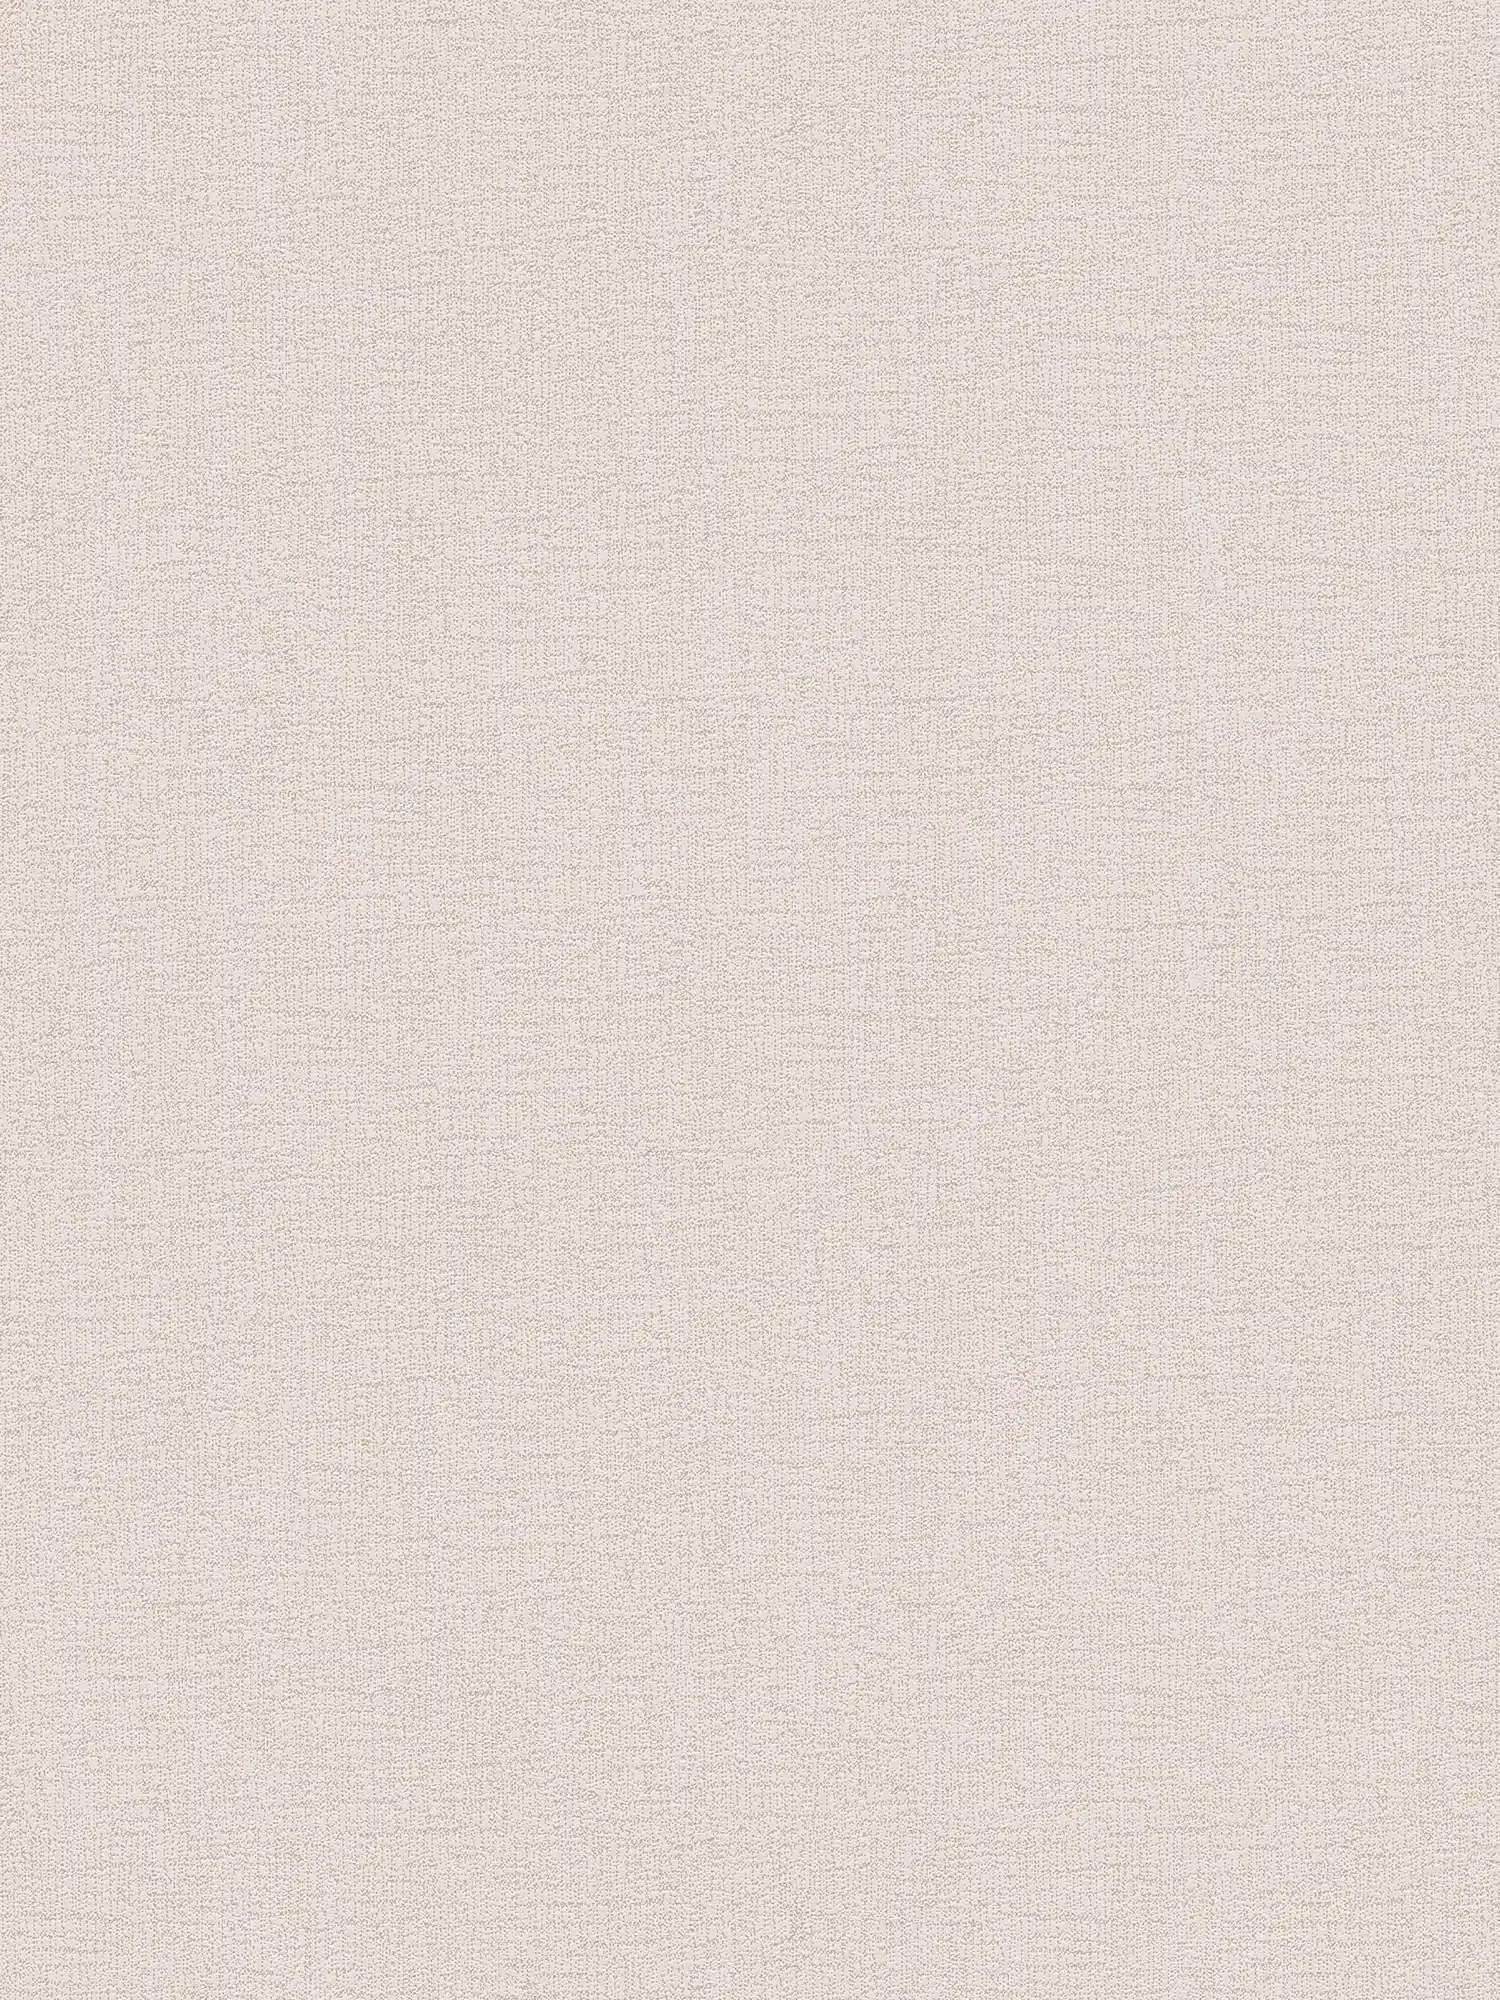 Papier peint beige clair aspect lin avec motifs structurés - beige
